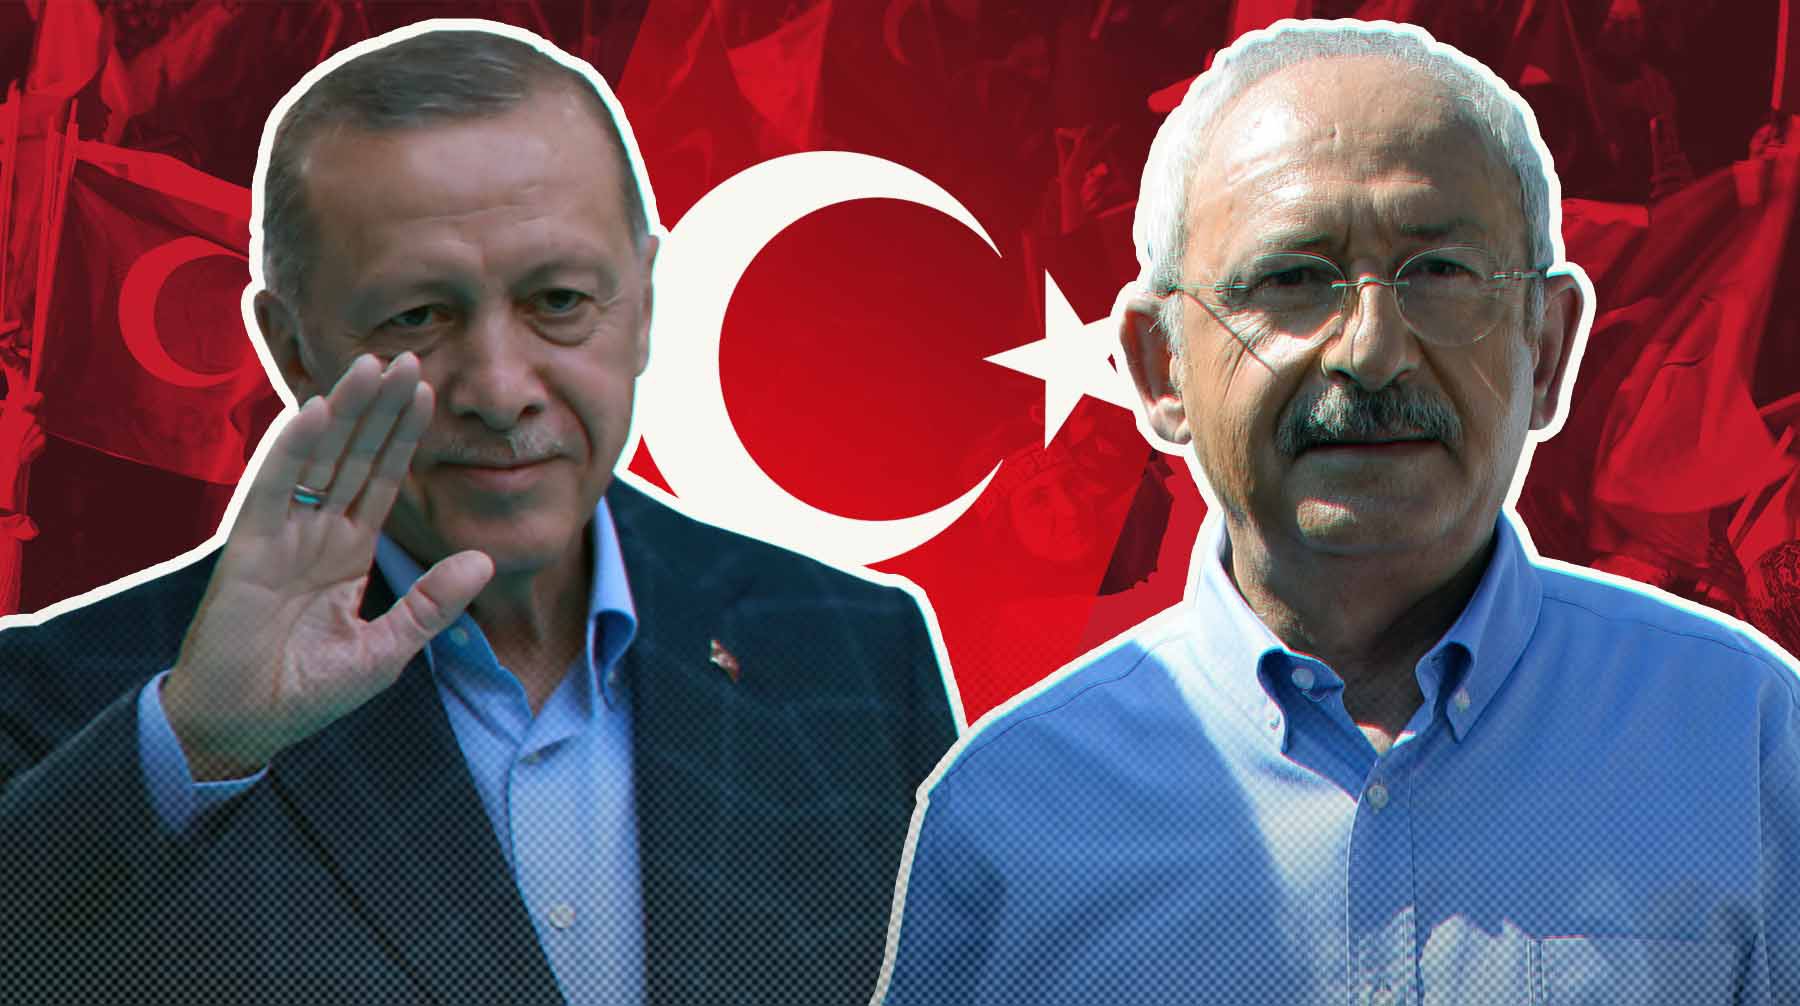 Dailystorm - Турция на распутье: ждет ли страну цветная революция и что требует народ от кандидата в президенты